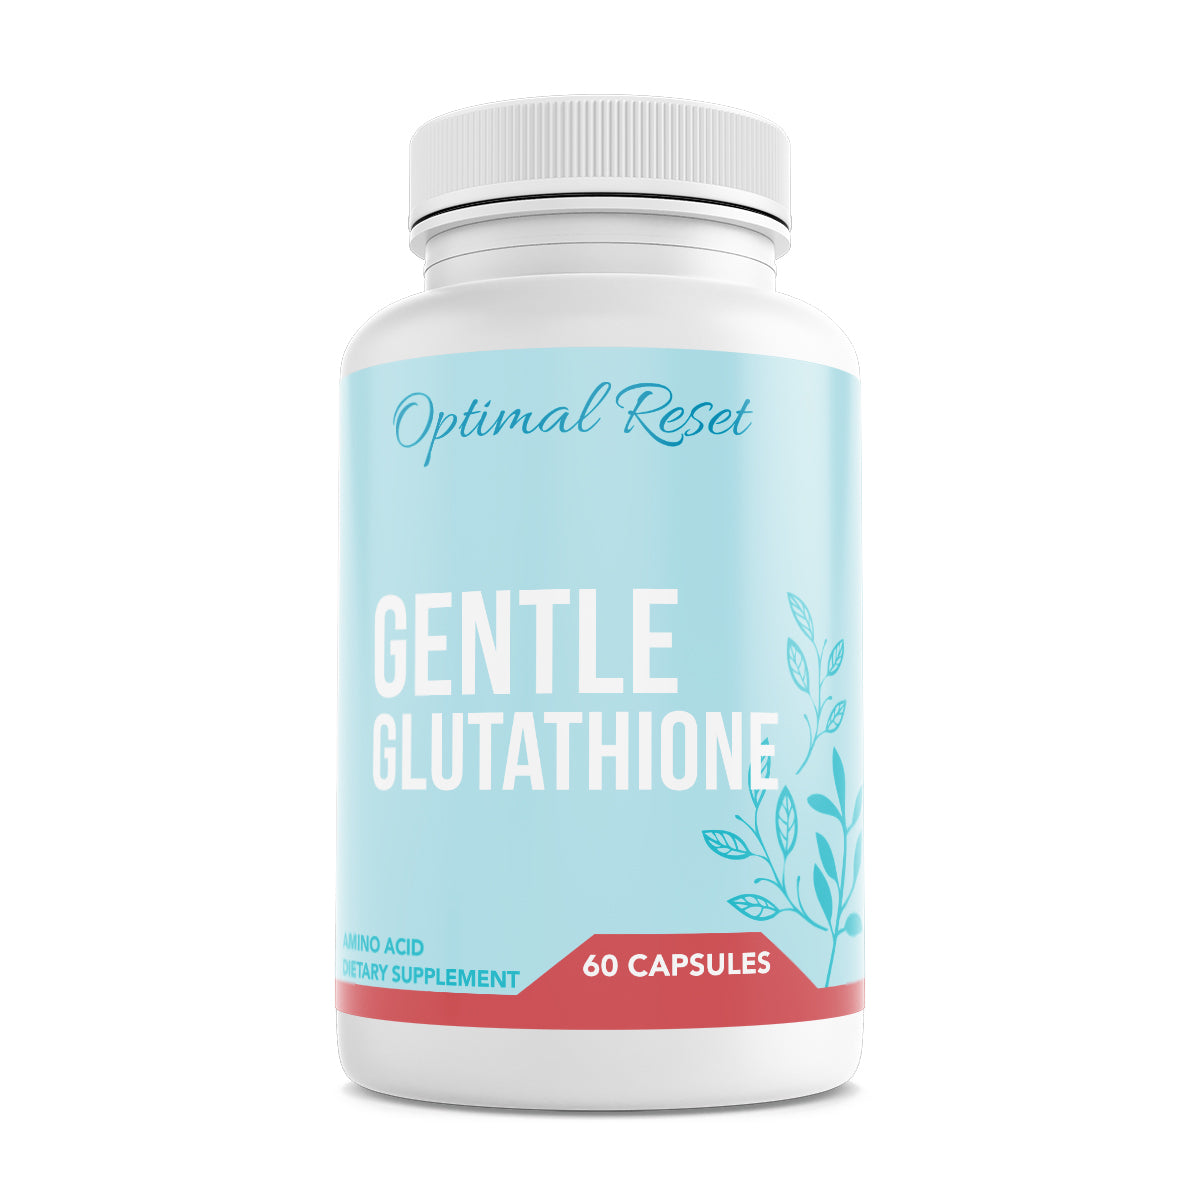 Gentle Glutathione